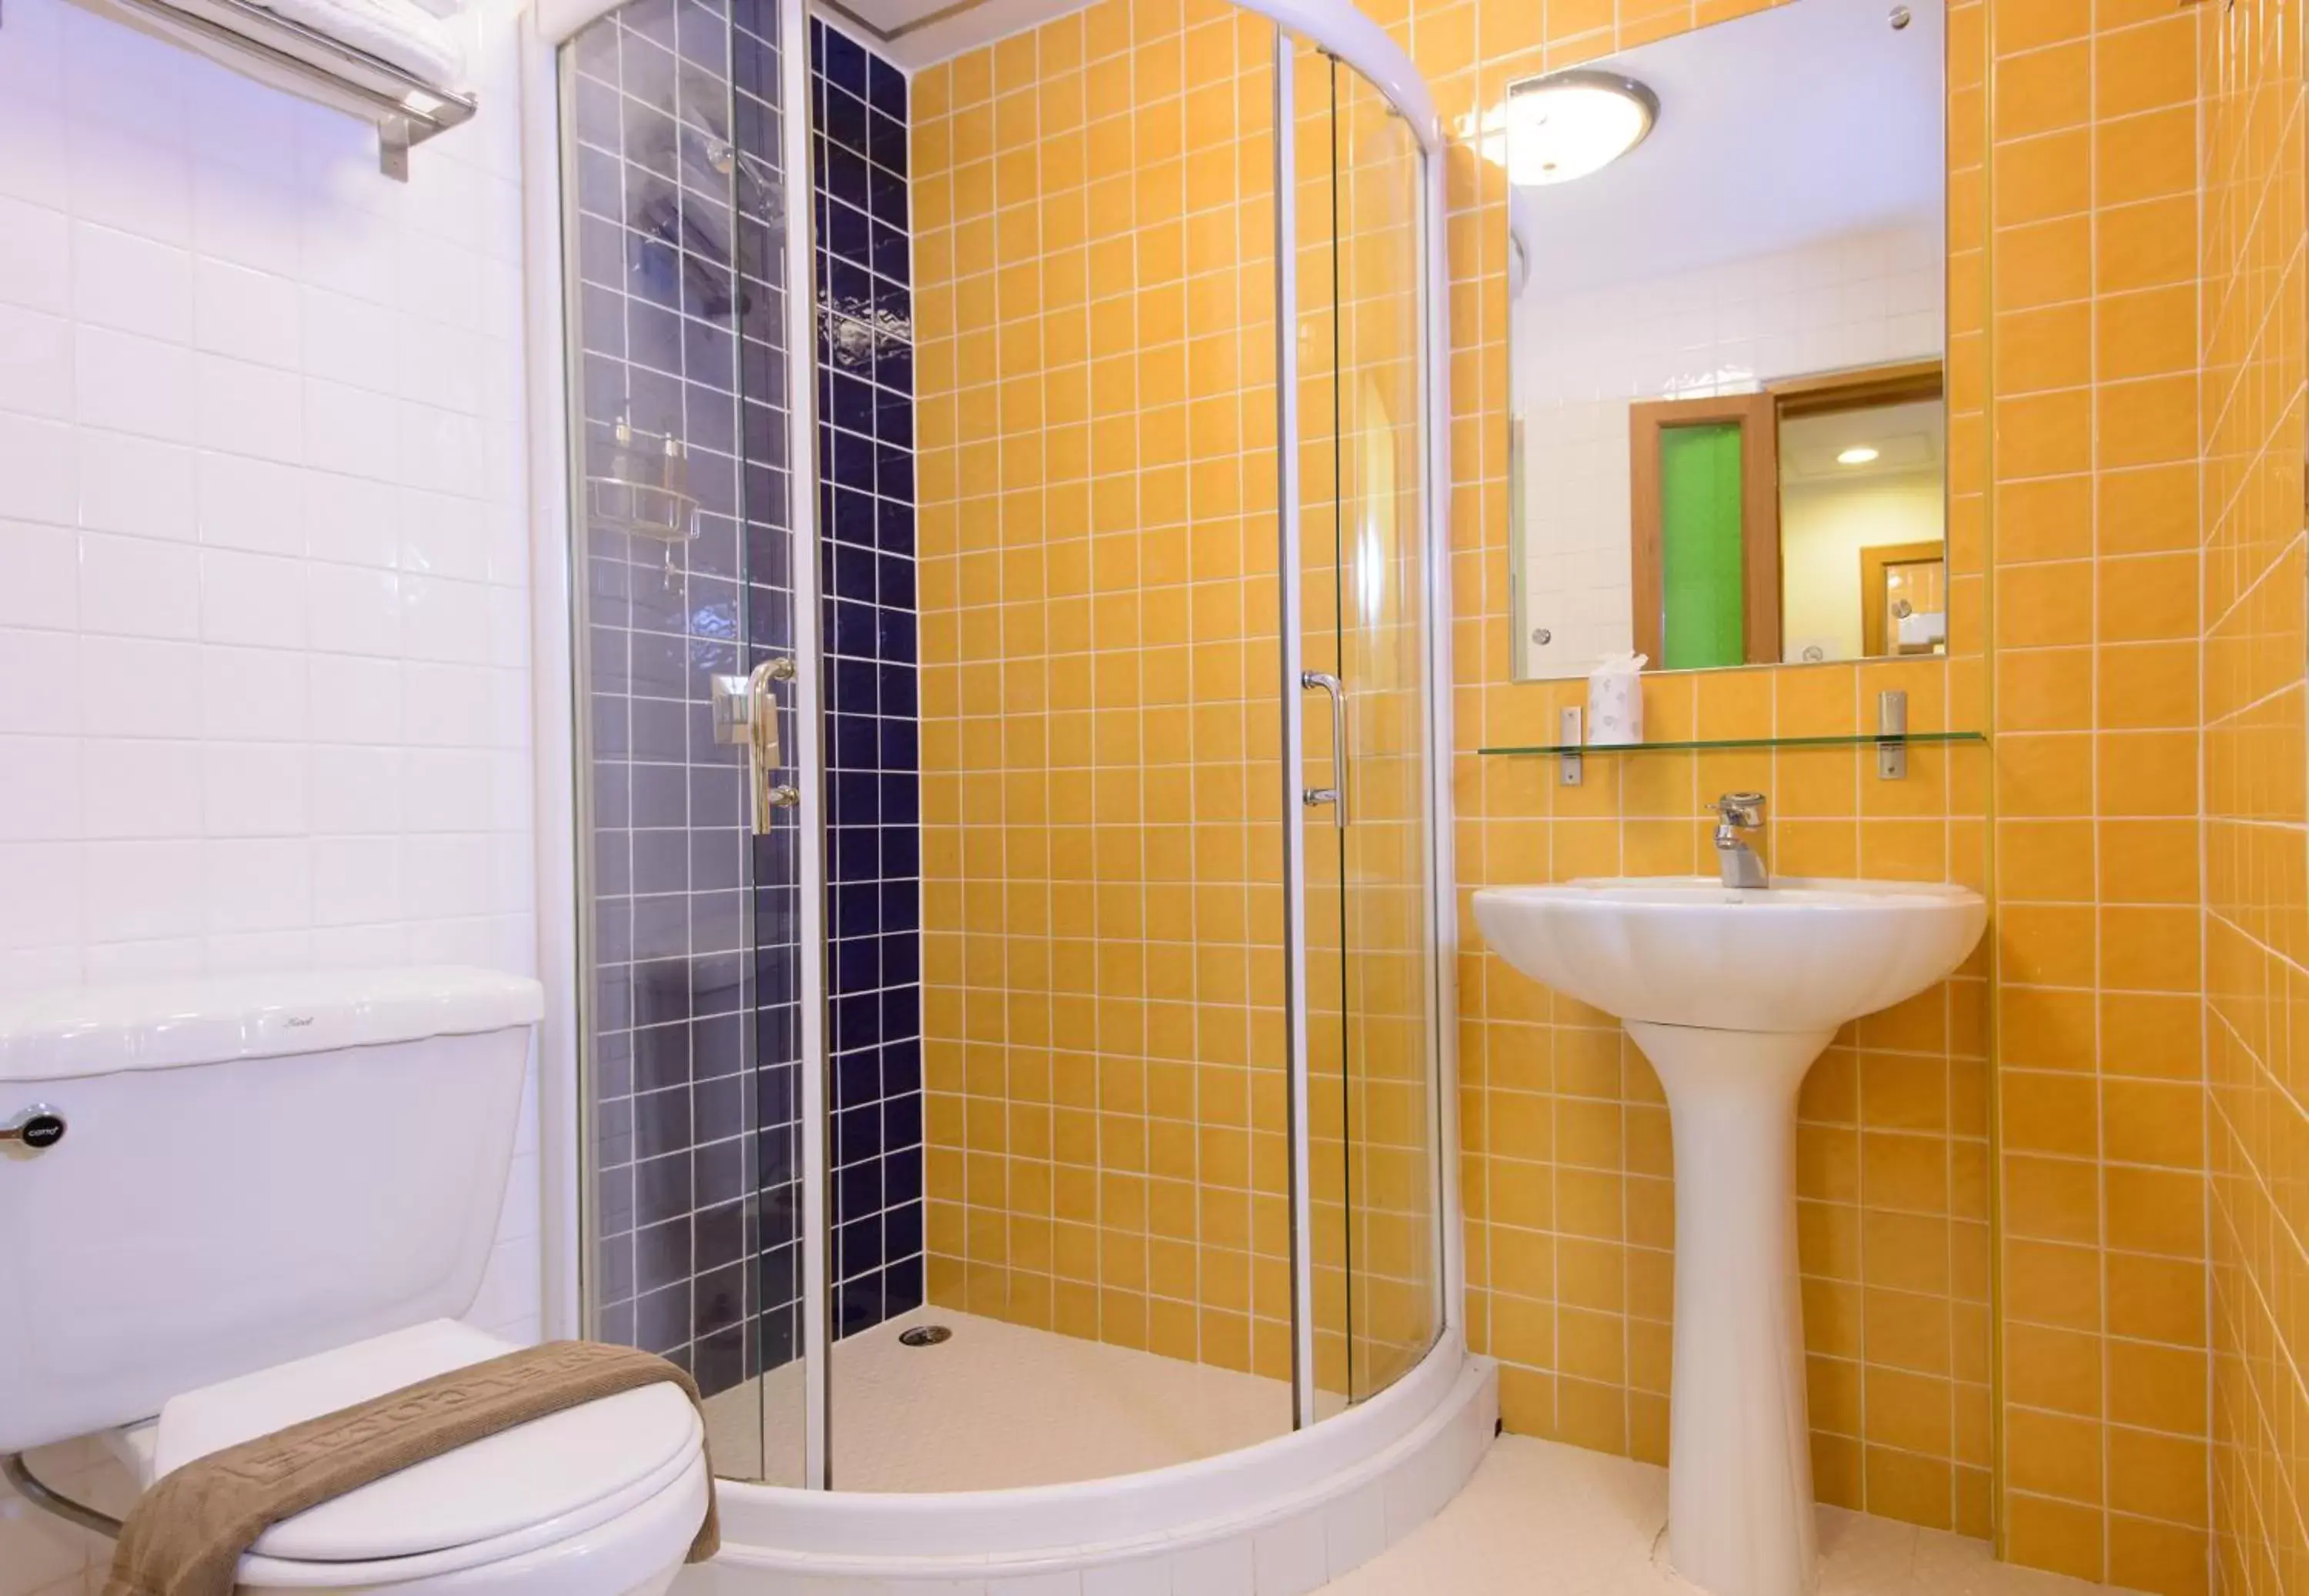 Bathroom in Golden House